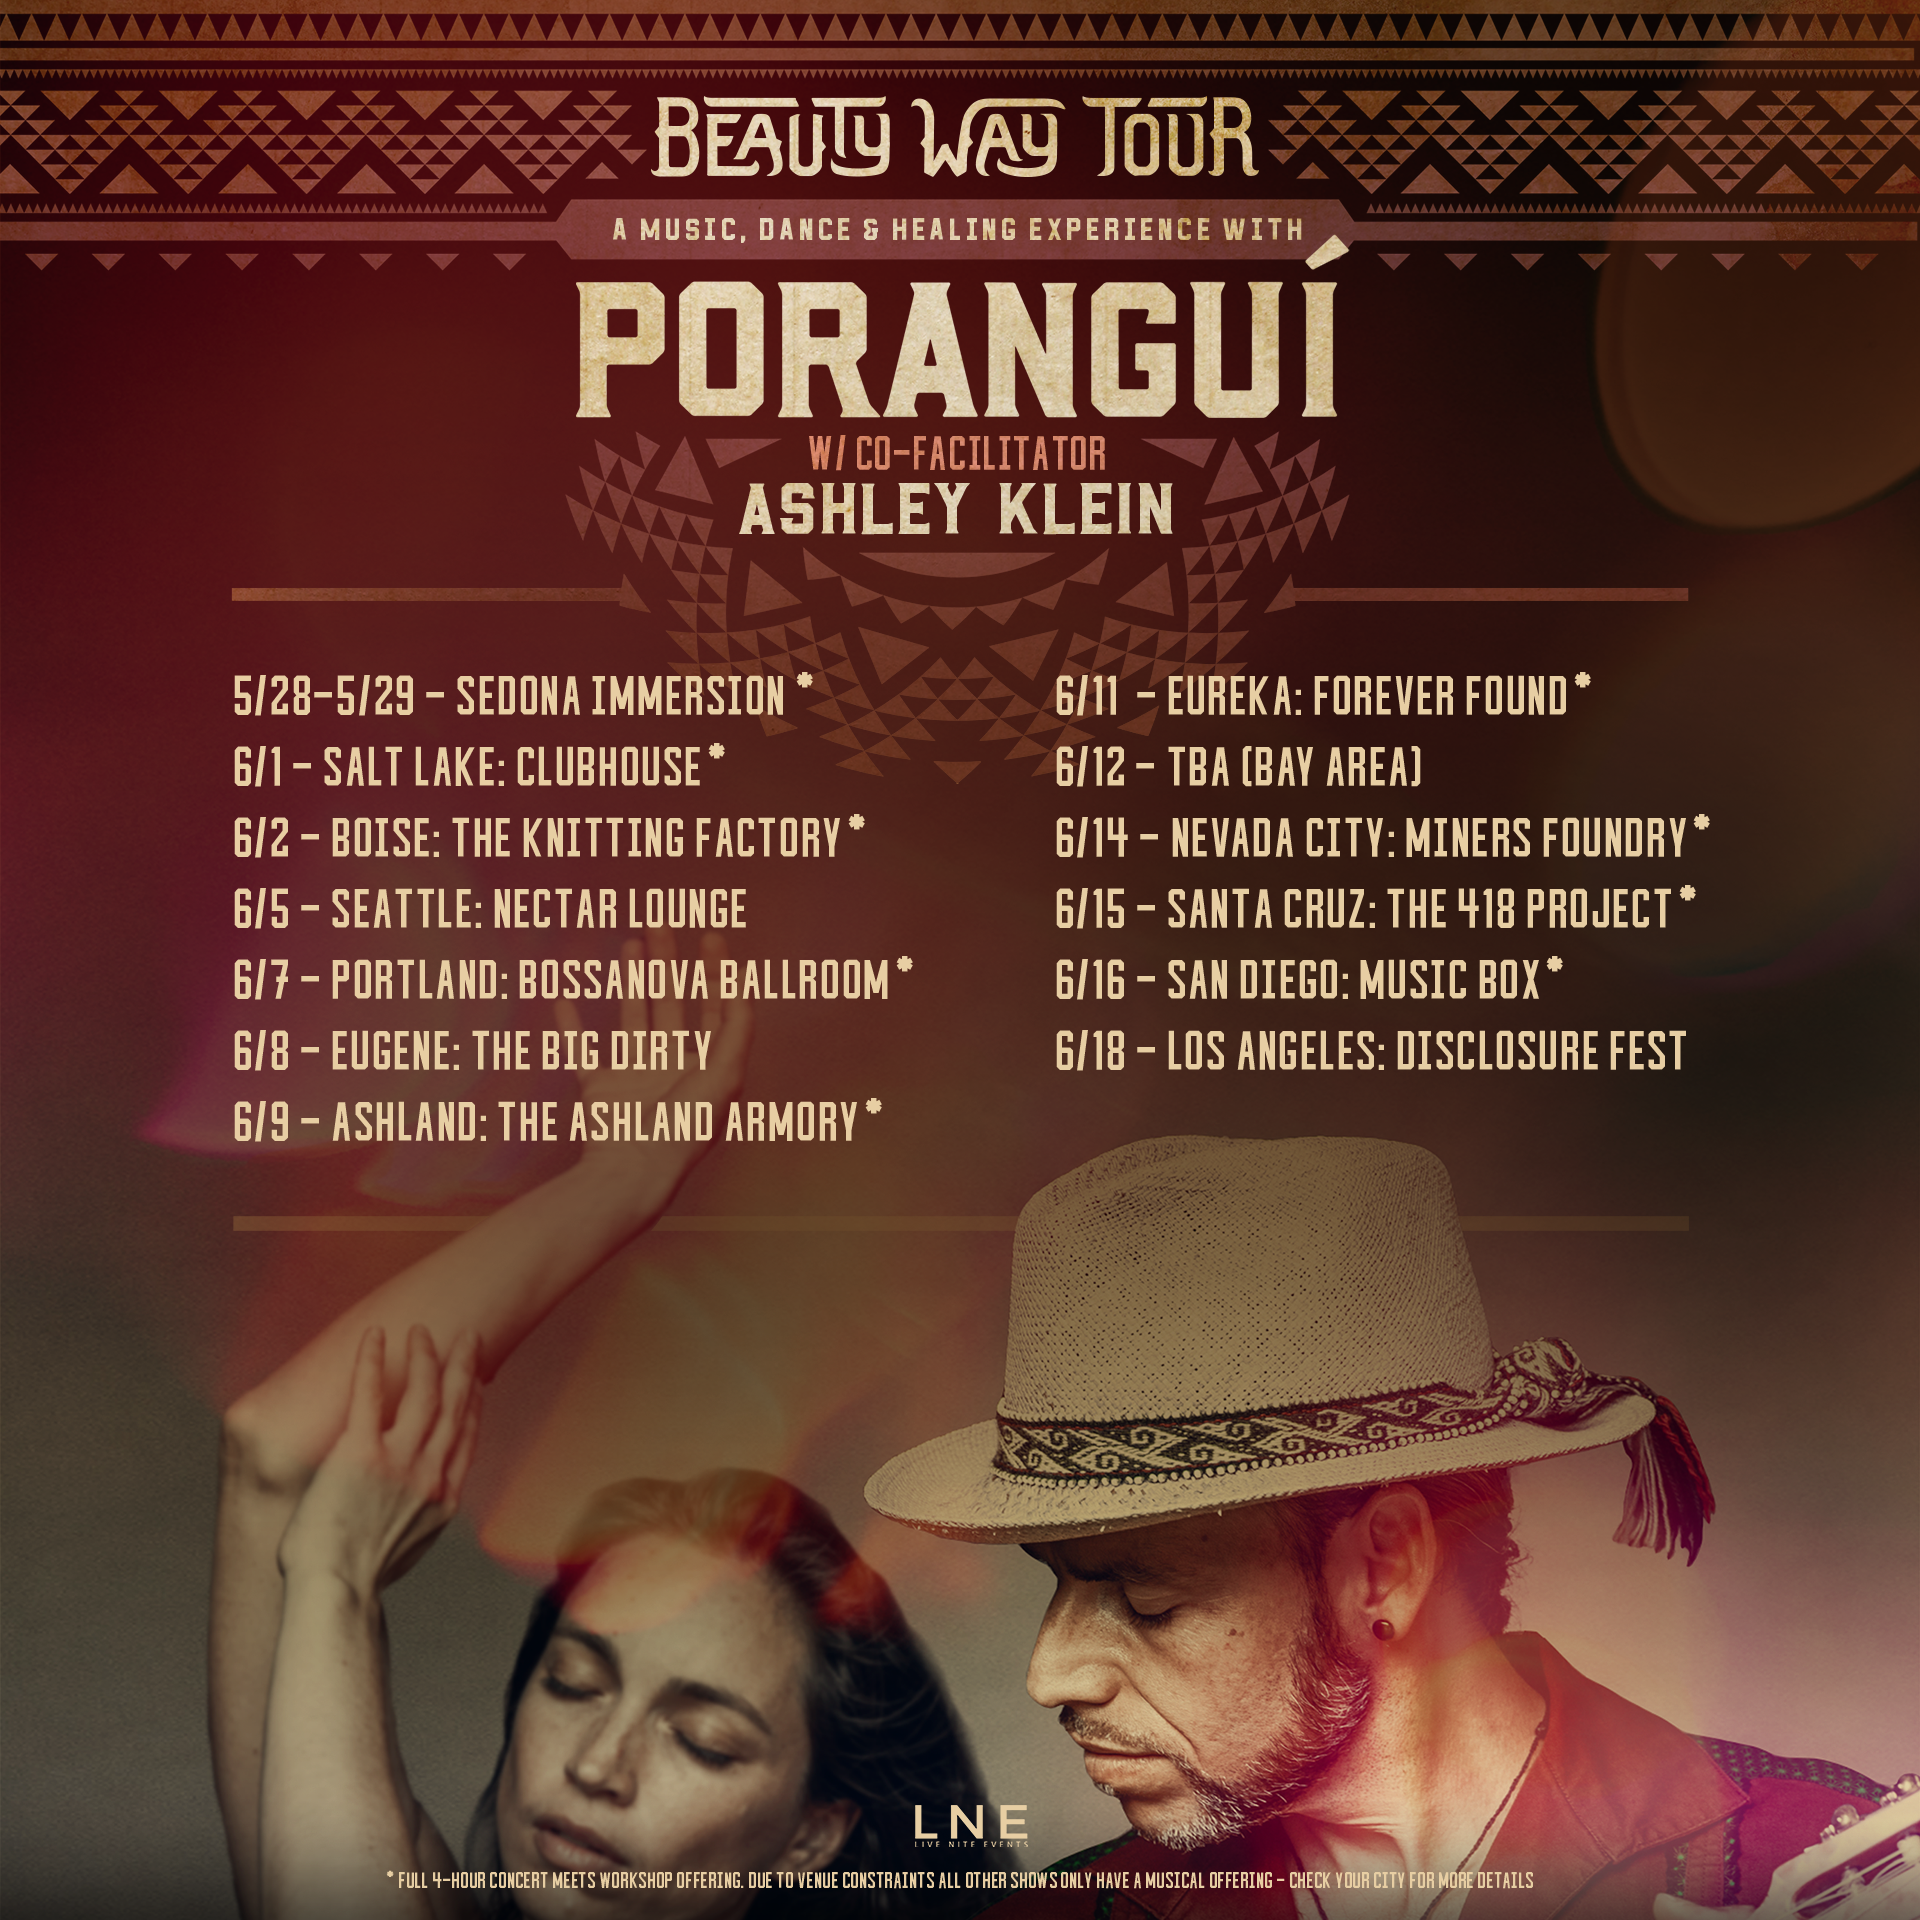 Poranguí, Poranguí tour, Poranguí tickets, Poranguí slc, Poranguí salt lake city, Poranguí 2022 tour, Poranguí 2022 tickets, Poranguí music, Poranguí album